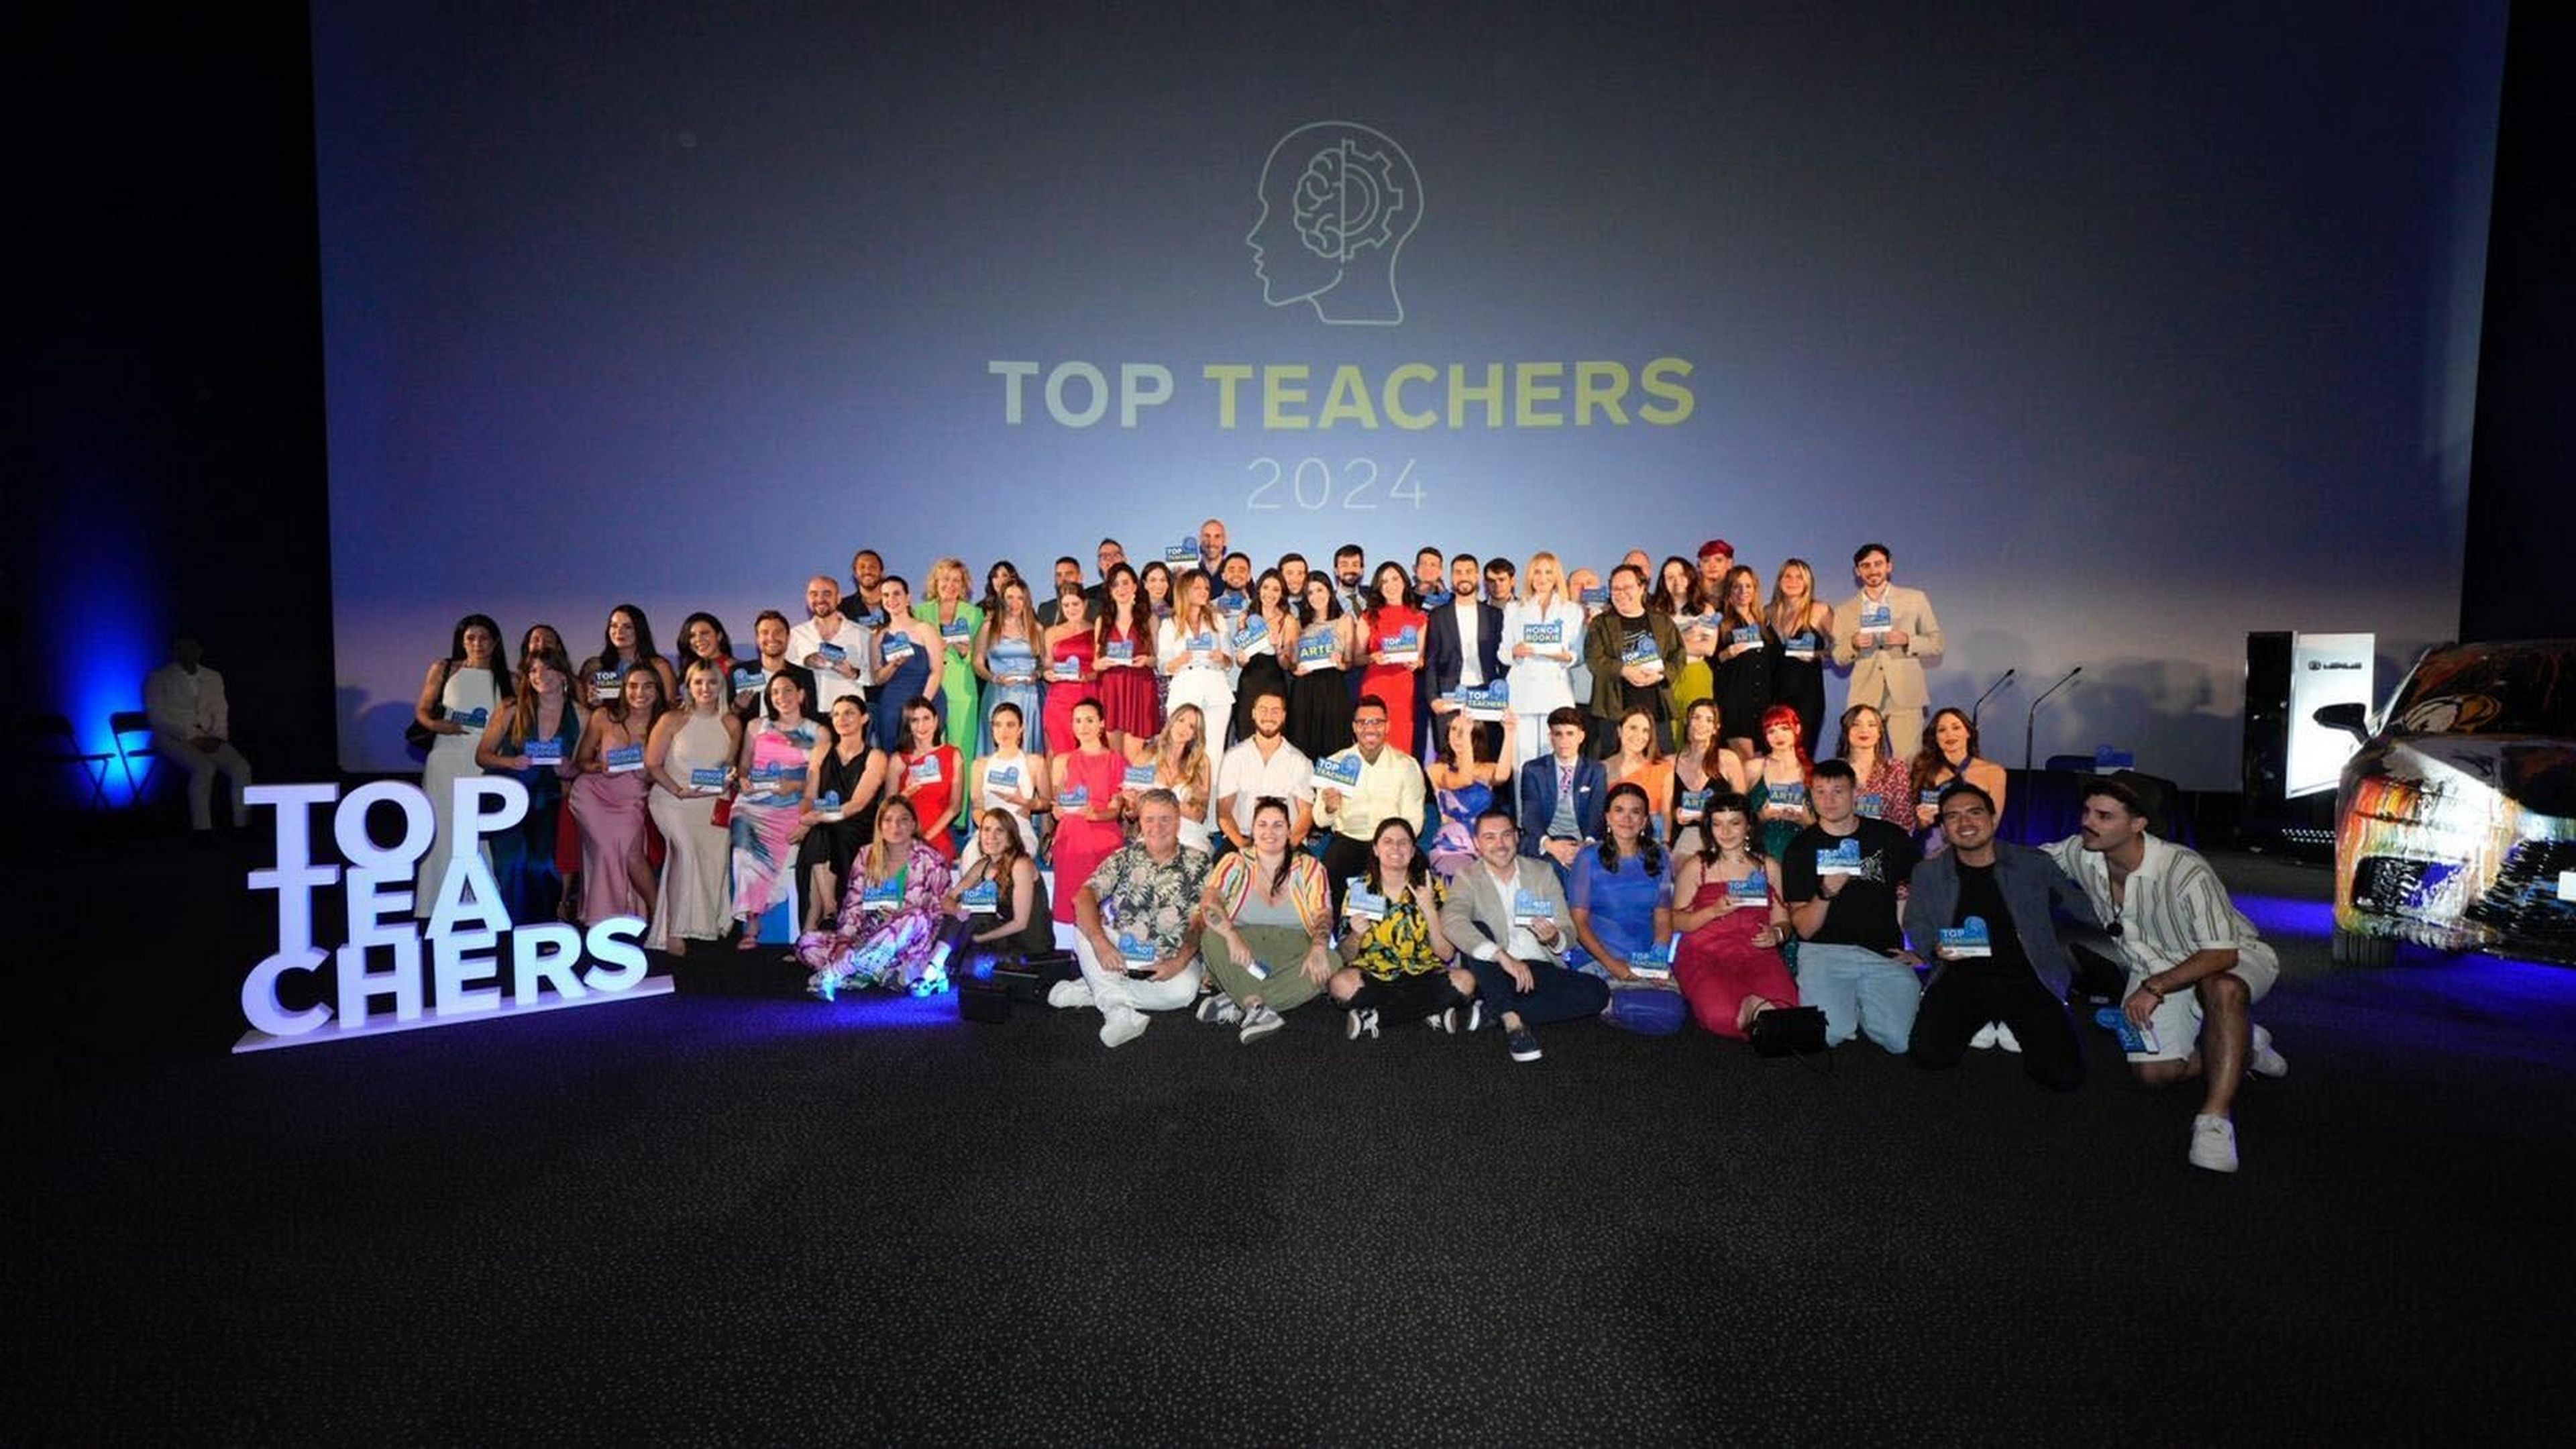 Premios Top Teachers 2024: quiénes son los creadores de contenido formativo y divulgativo del año